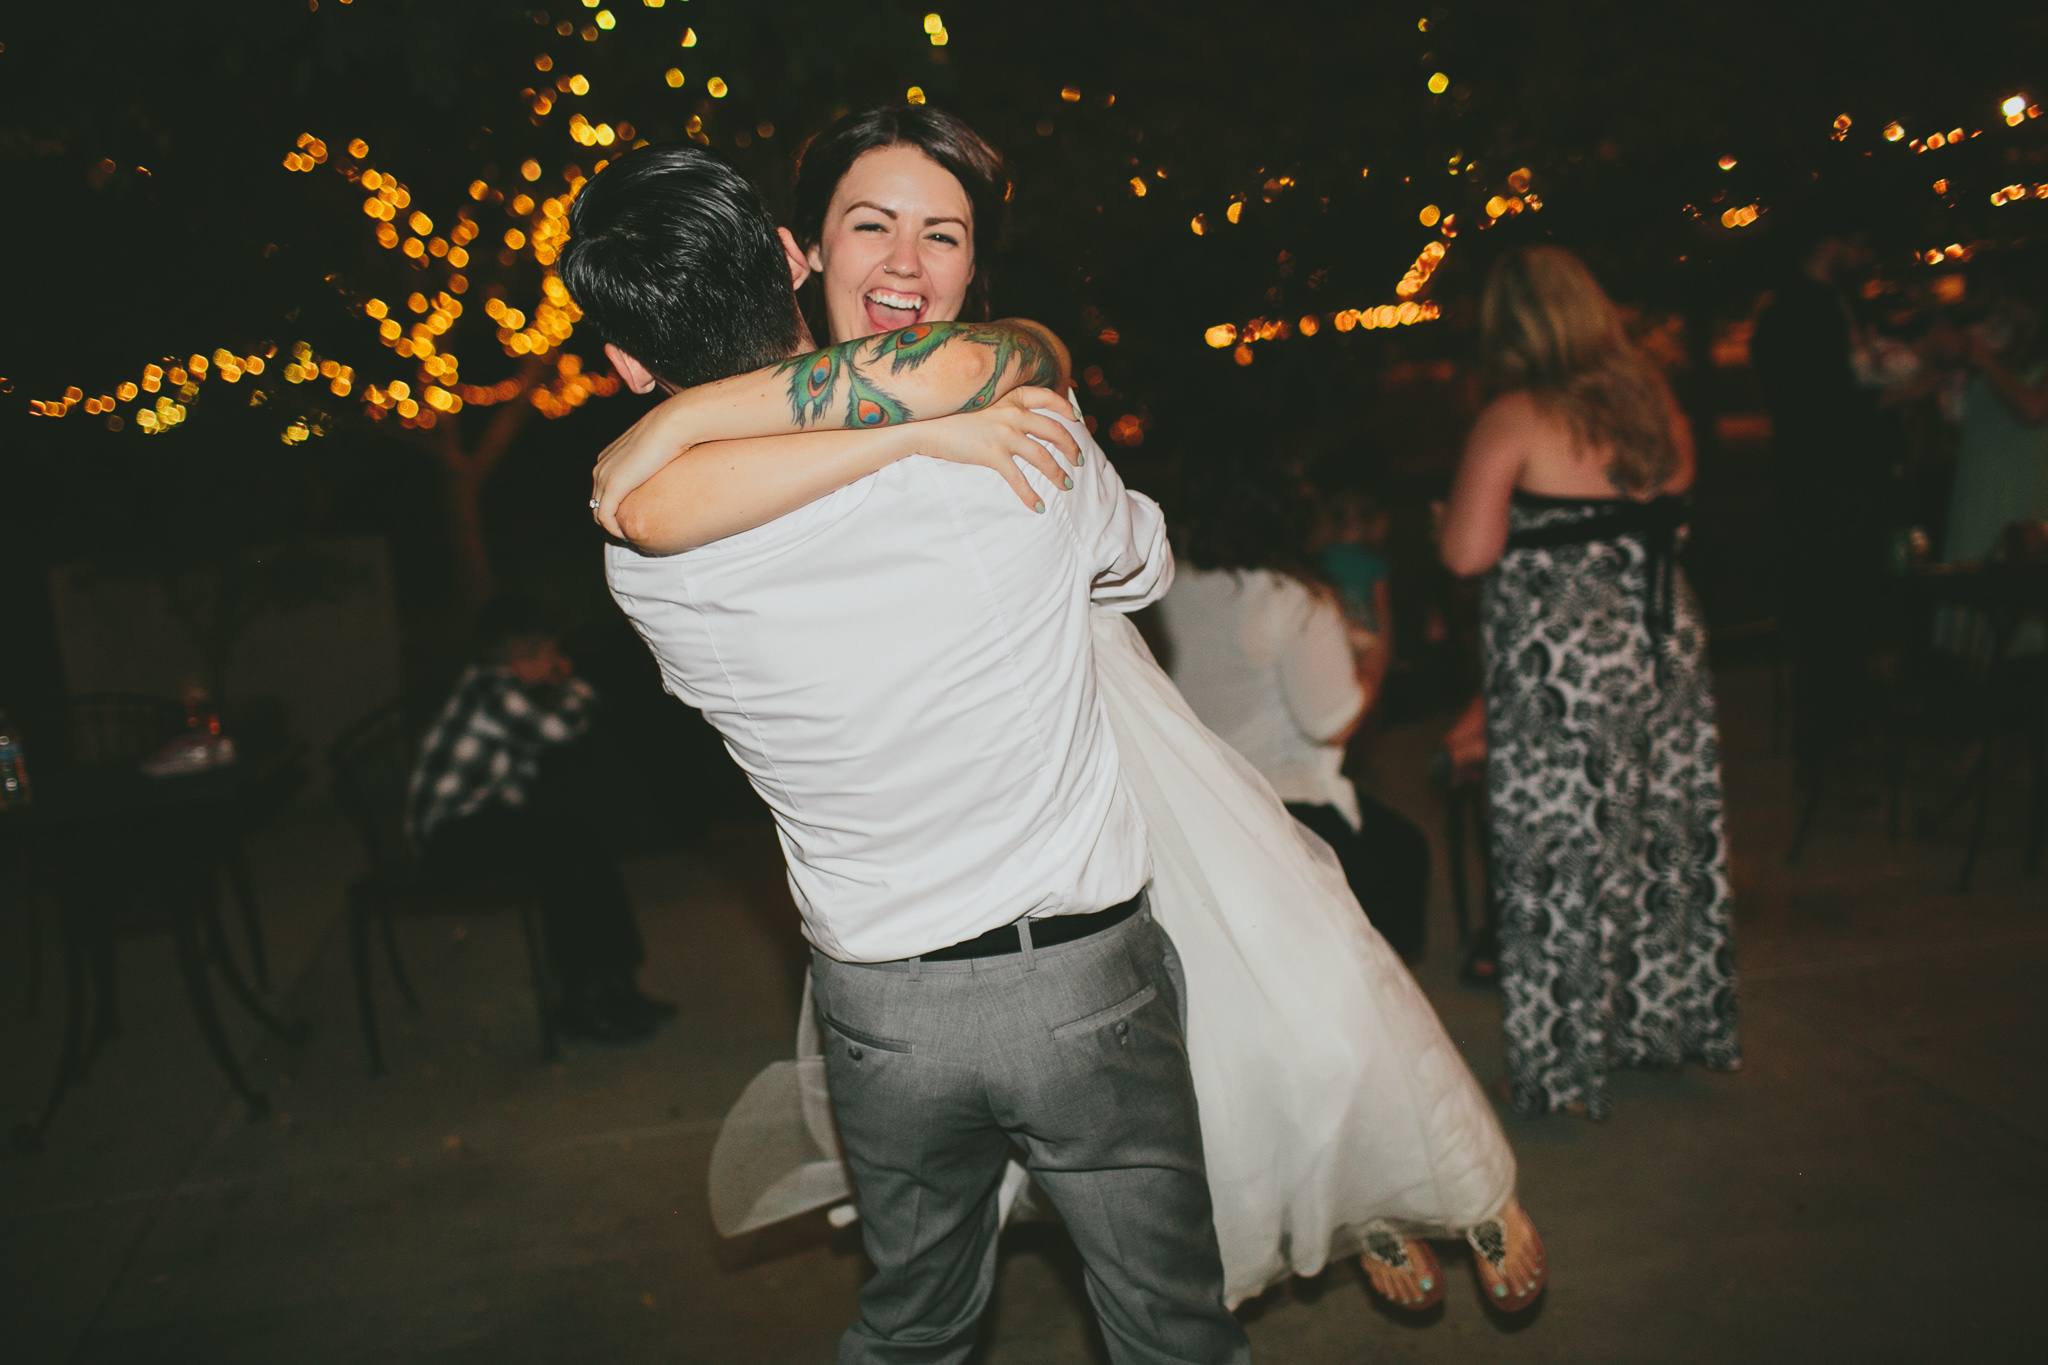 Amy+Nick-WEDDING_KellyBoitanoPhotography20151219_0173